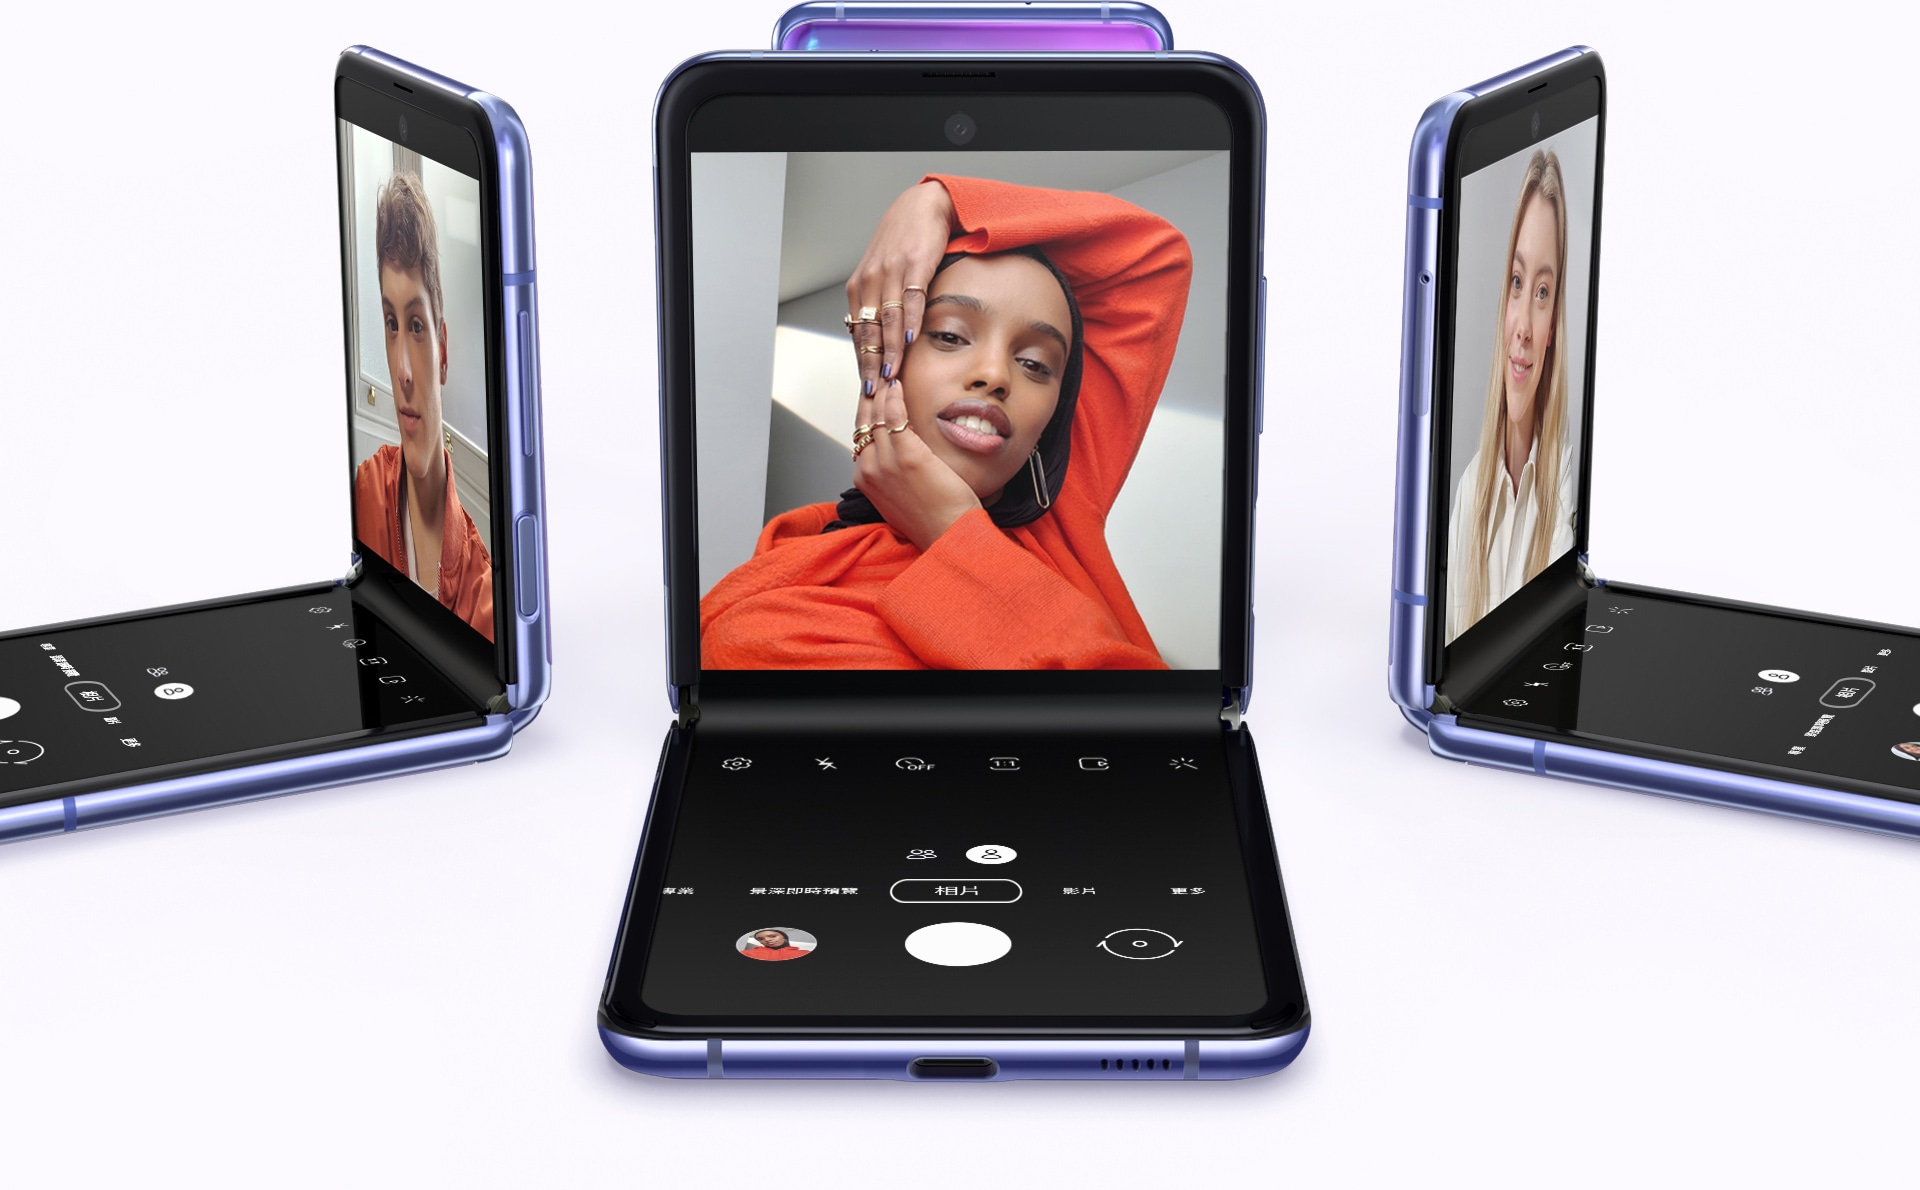 四部頑美紫的Galaxy Z Flip手機以不同角度擺放，並圍成一圈。其中一部顯示著男人的自拍照，另一部則顯示著一個女人的自拍照，再另一部的螢幕亦顯示著另一個女人的自拍照